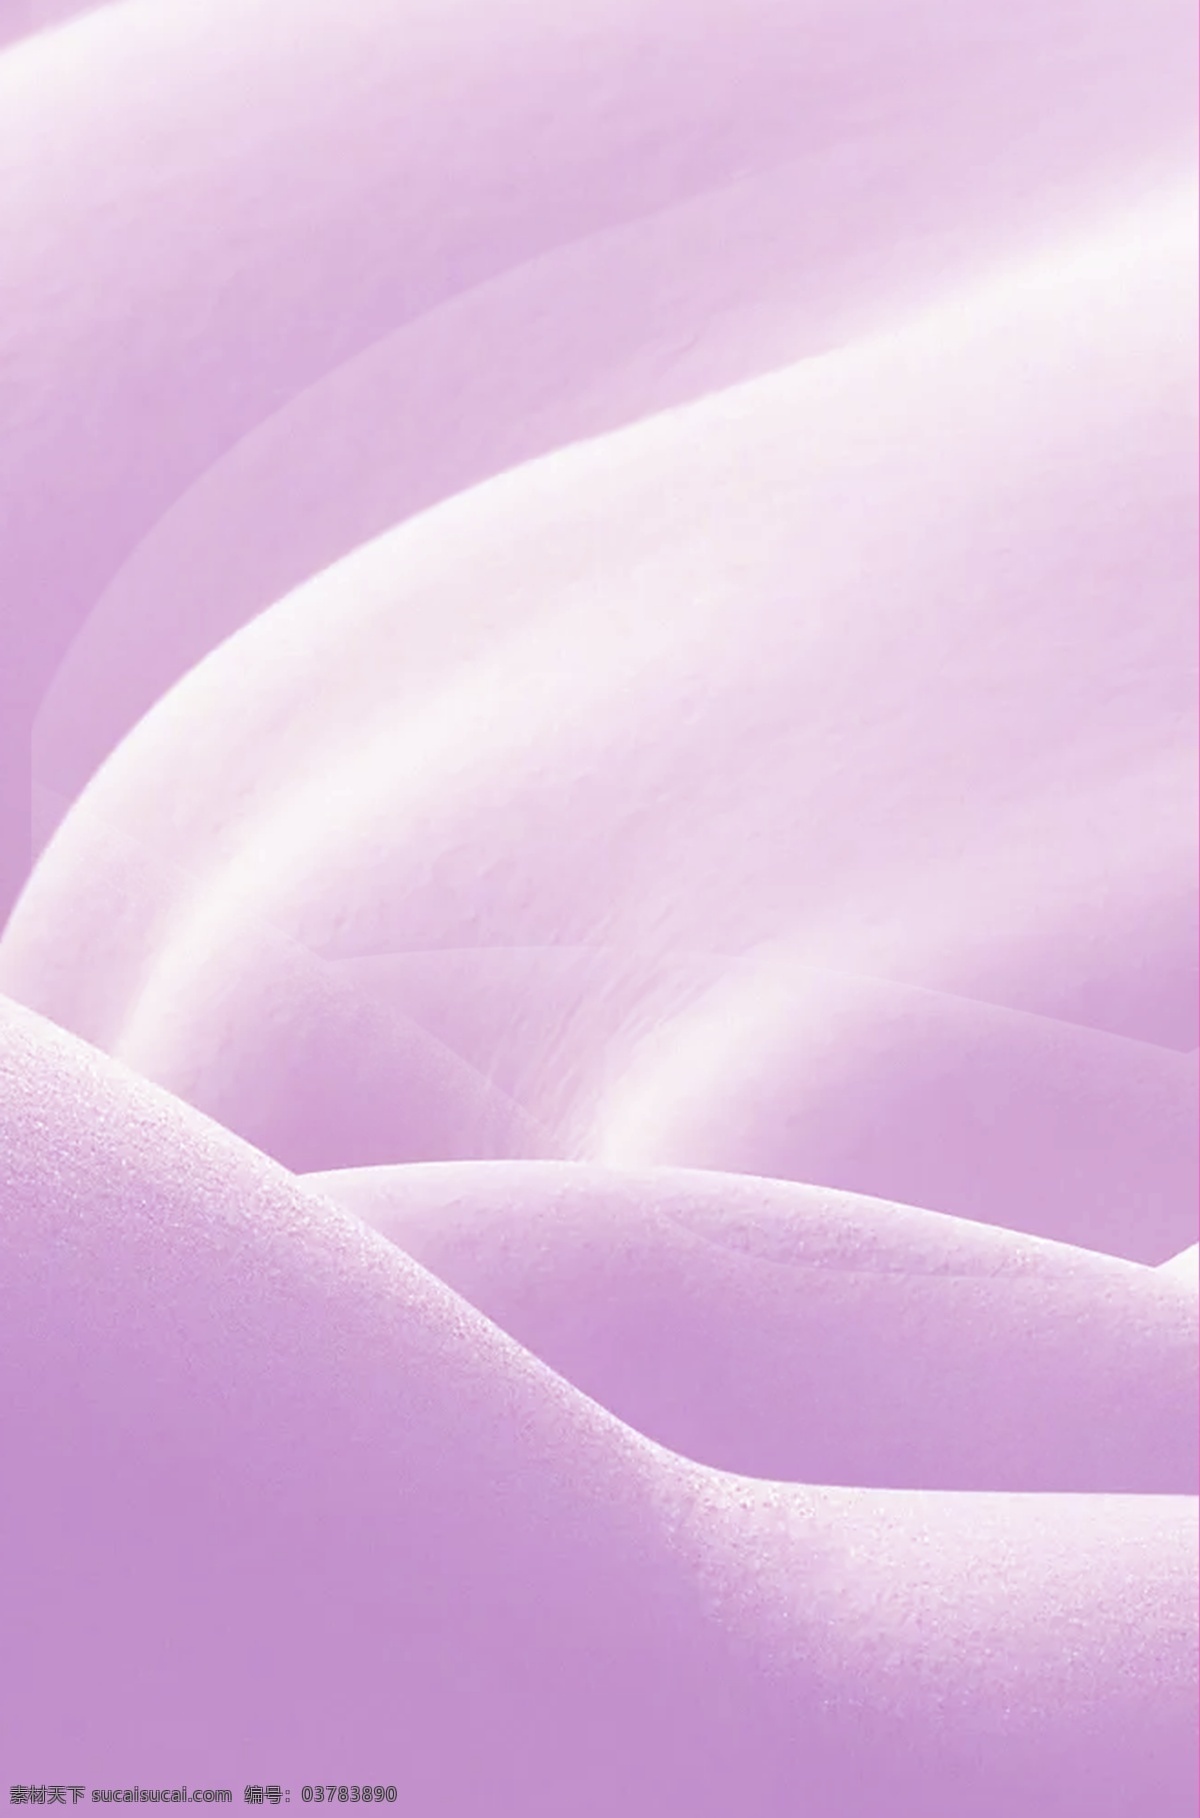 布料背景 布料 淡紫色 背景 纹理质感背景 分层 背景素材